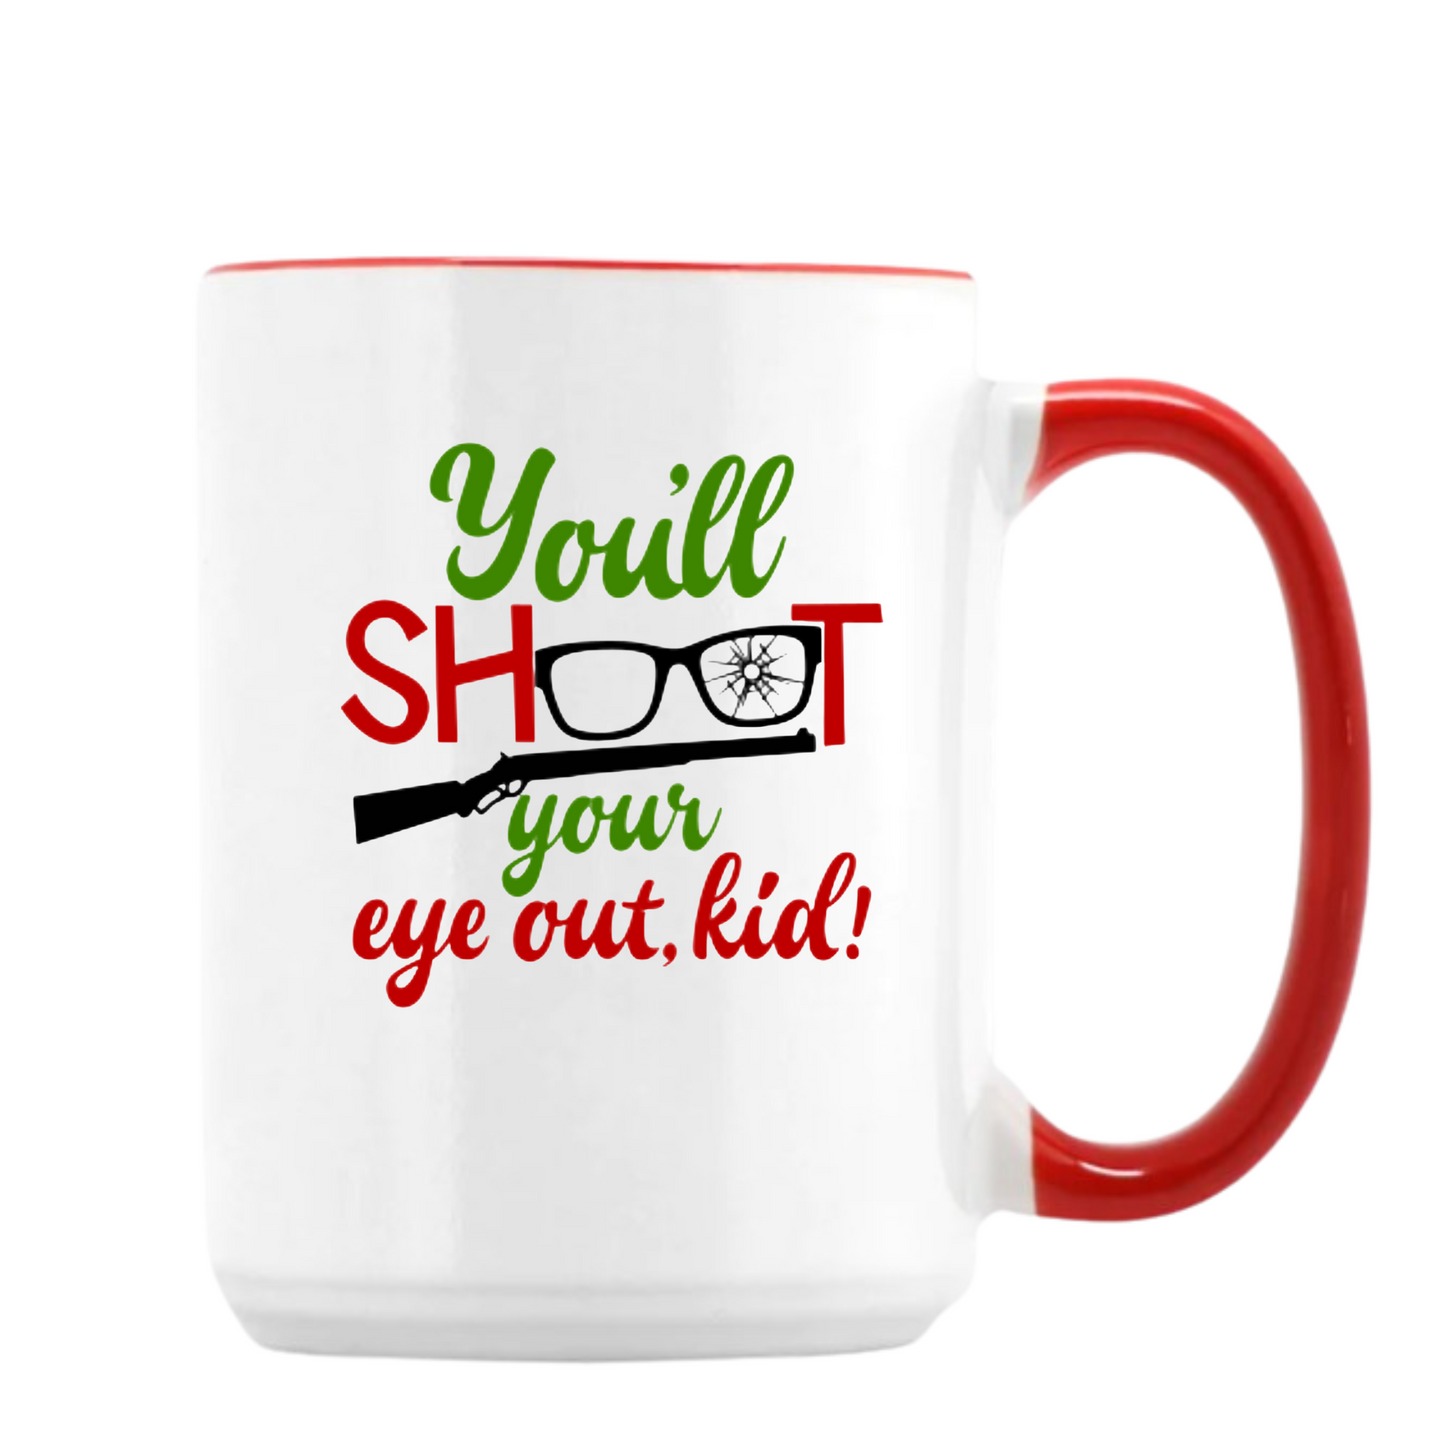 You'll Shoot your eye out kid! Mug